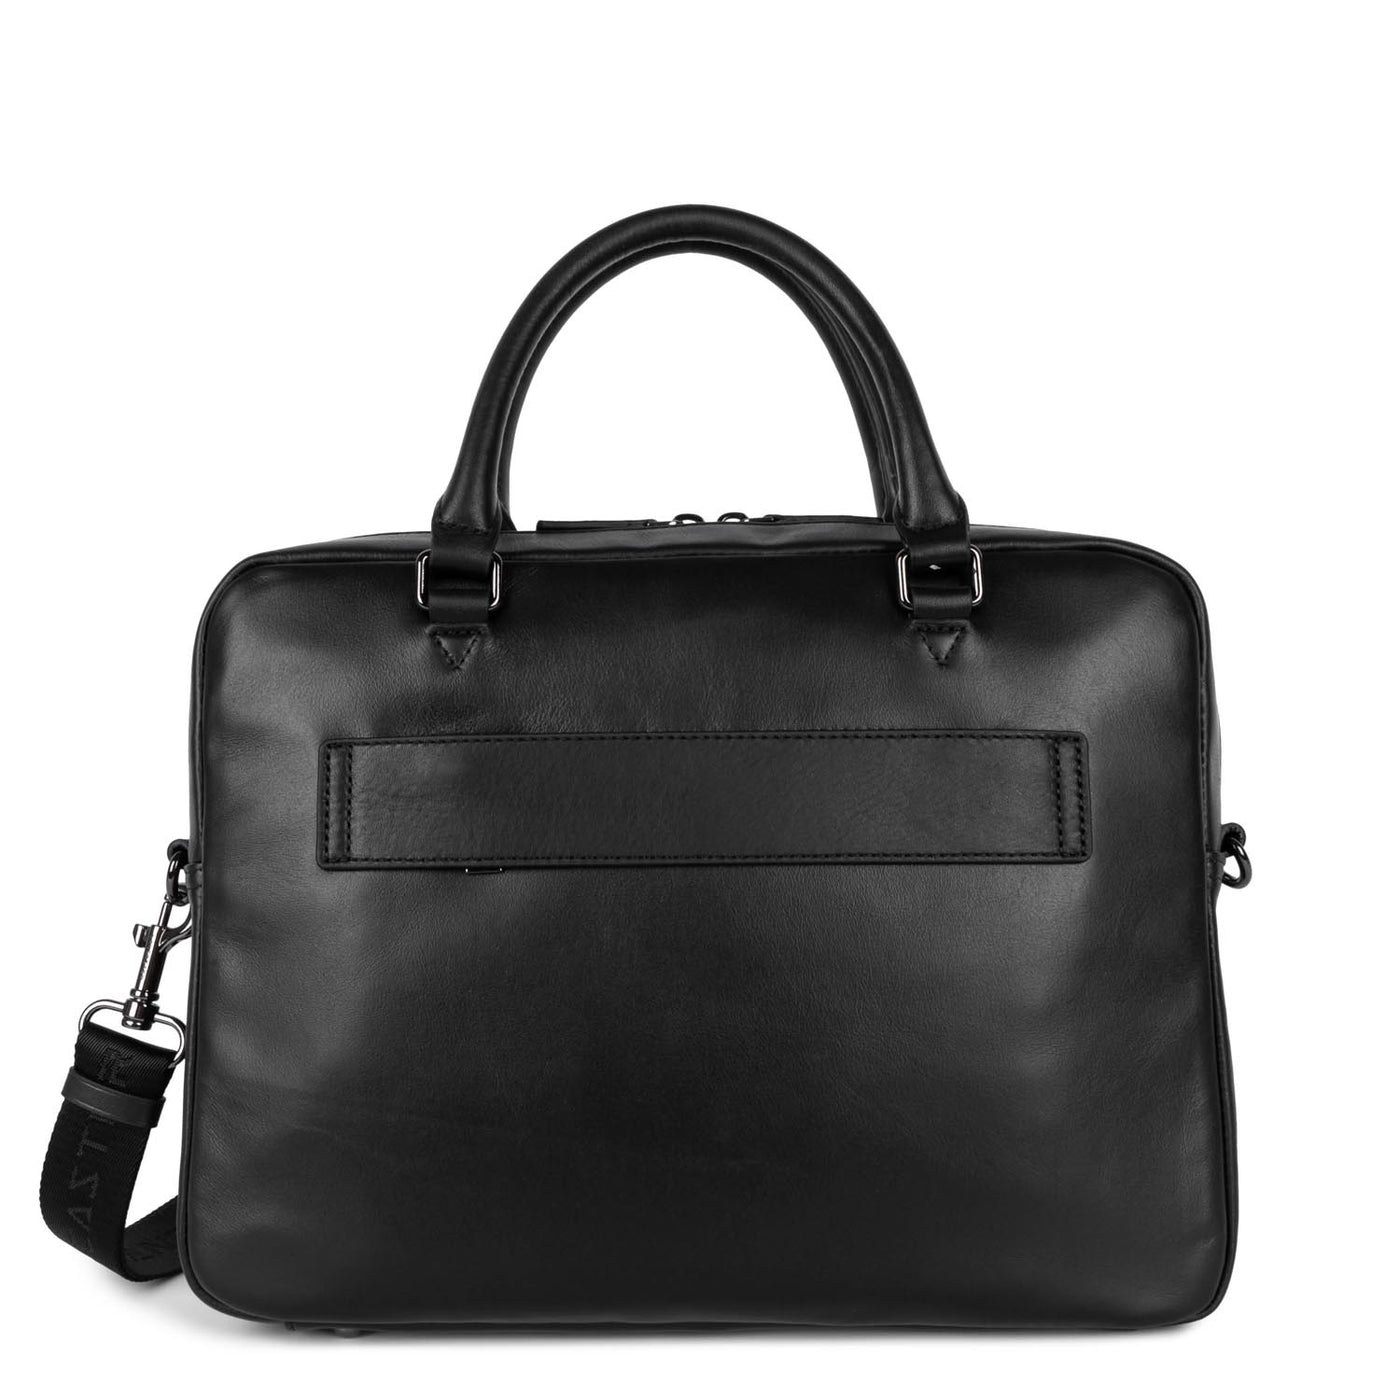 m portfolio document holder bag - soft vintage homme #couleur_noir